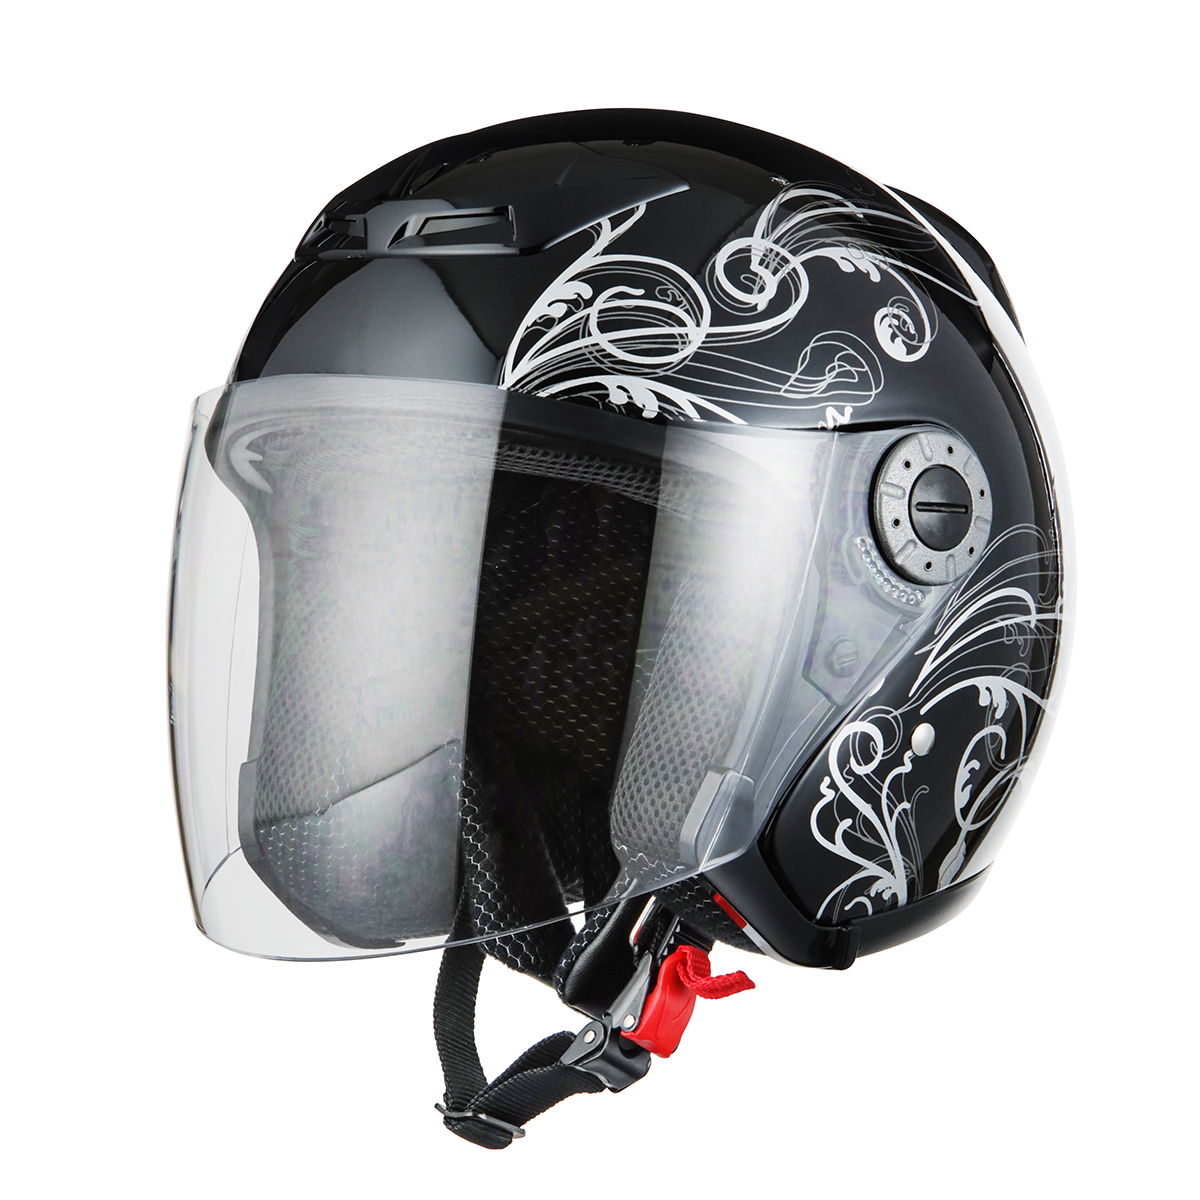 ヘルメット ジェット グラフィック ブラック サイズXL SG規格 PSCマーク取得 バイクパーツセンター_画像1